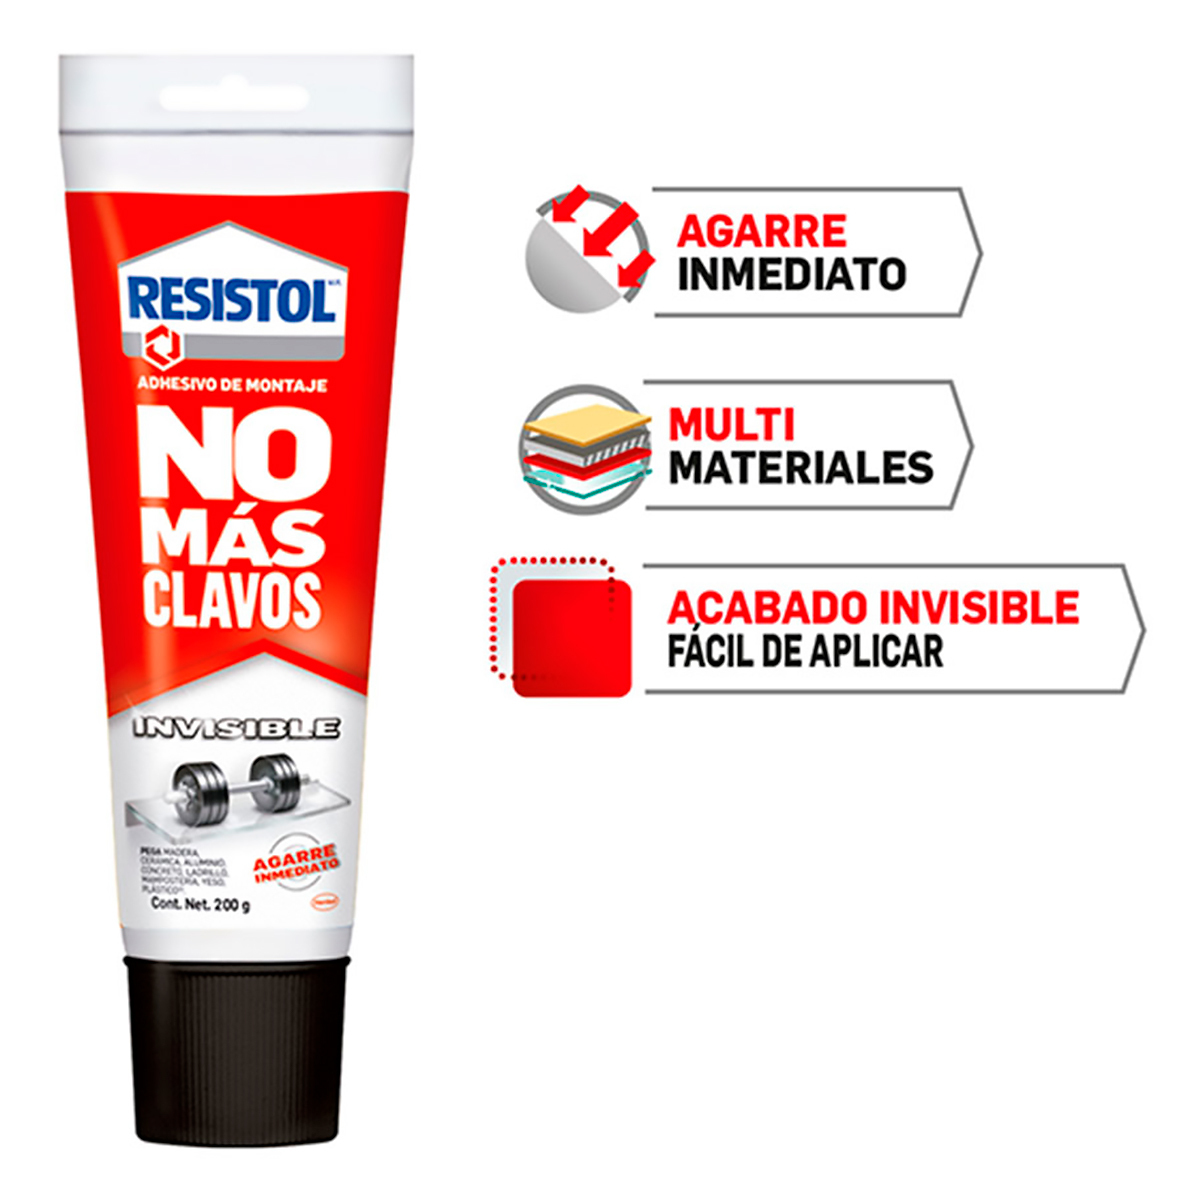 Adhesivo de Montaje Resistol No Más Clavos Invisible 200 gr 1 pieza | Office  Depot Mexico